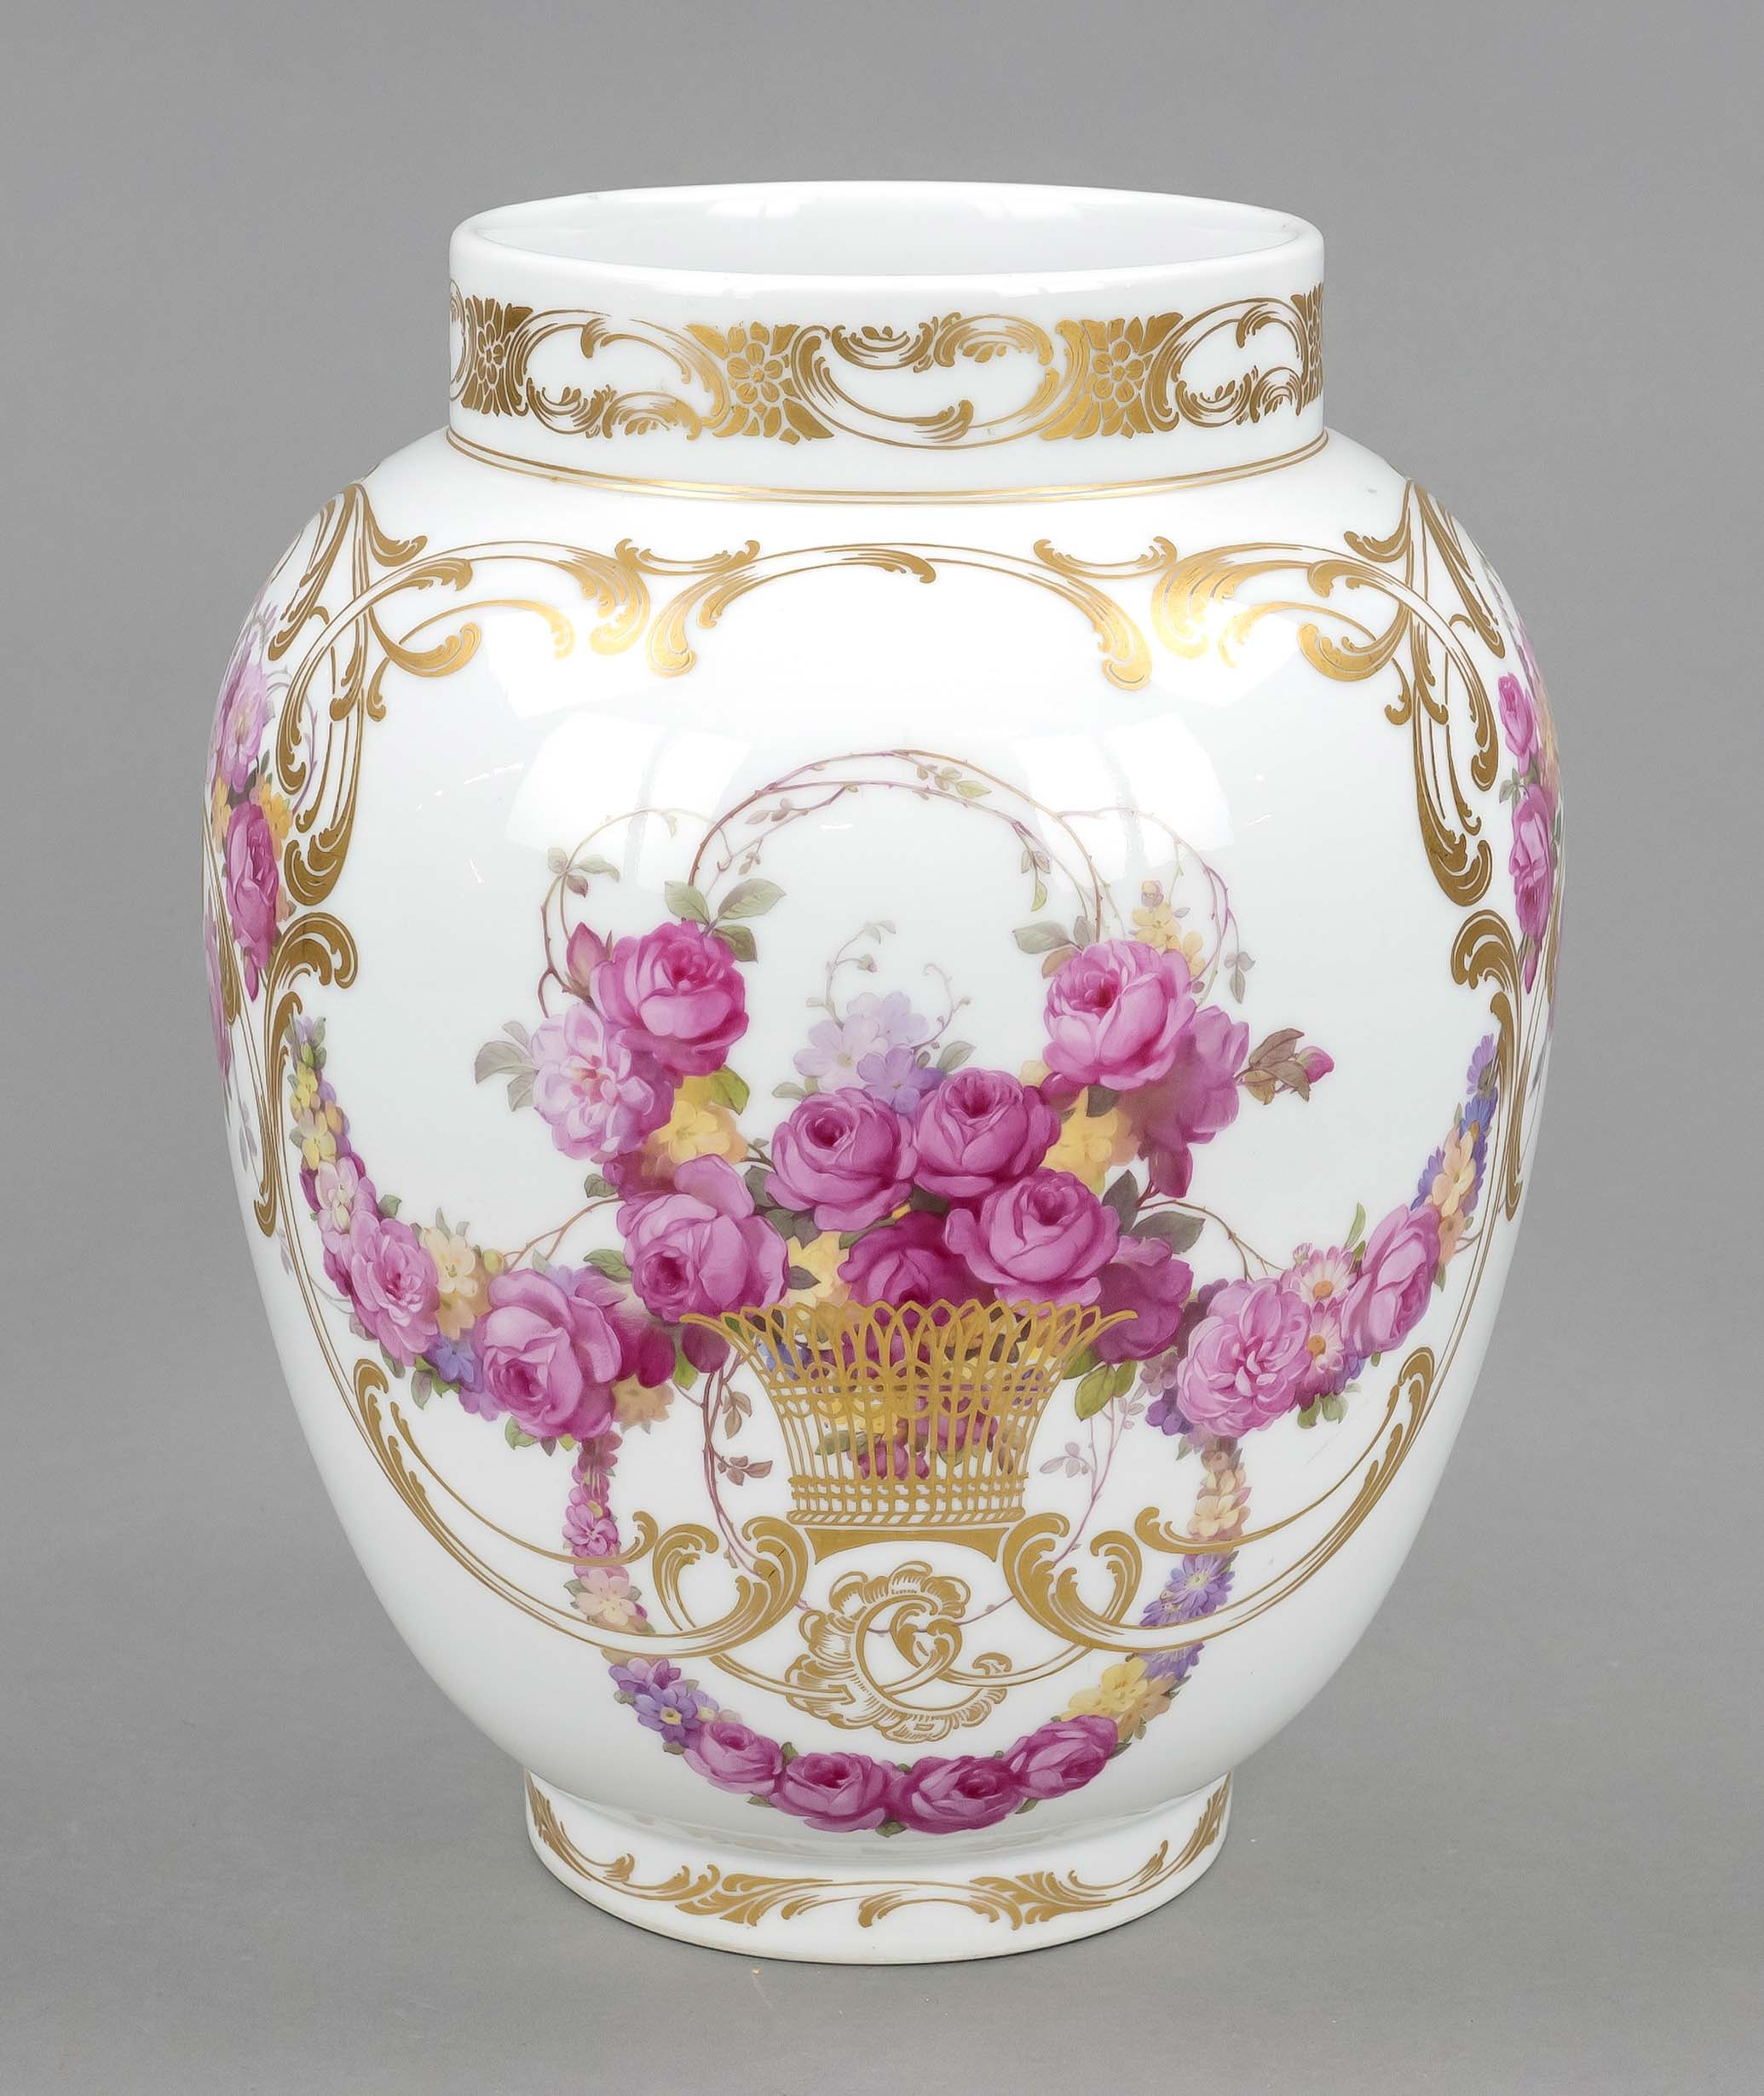 Jugenstil vase, KPM Berlin, c. 1900, 1st choice, red imperial apple mark, form Apothekergefäß, lid - Image 2 of 2